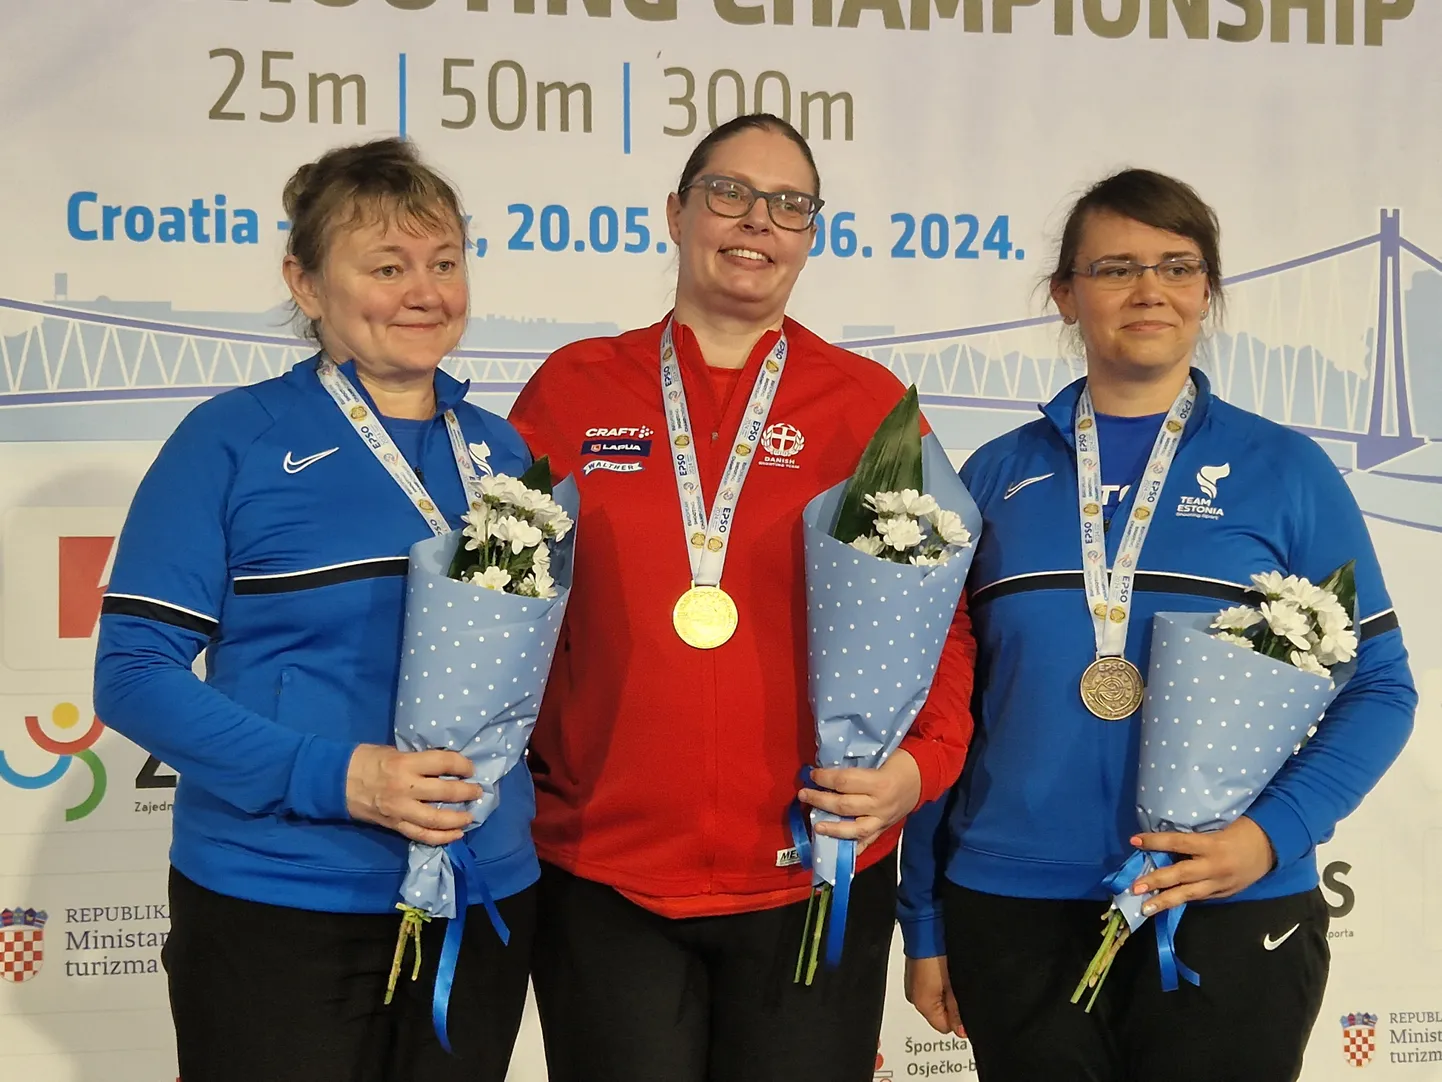 Naiste individuaalvõistluse esikolmik. Kõige vasemal on Anžela Voronova, kõige paremal Karina Kotkas.